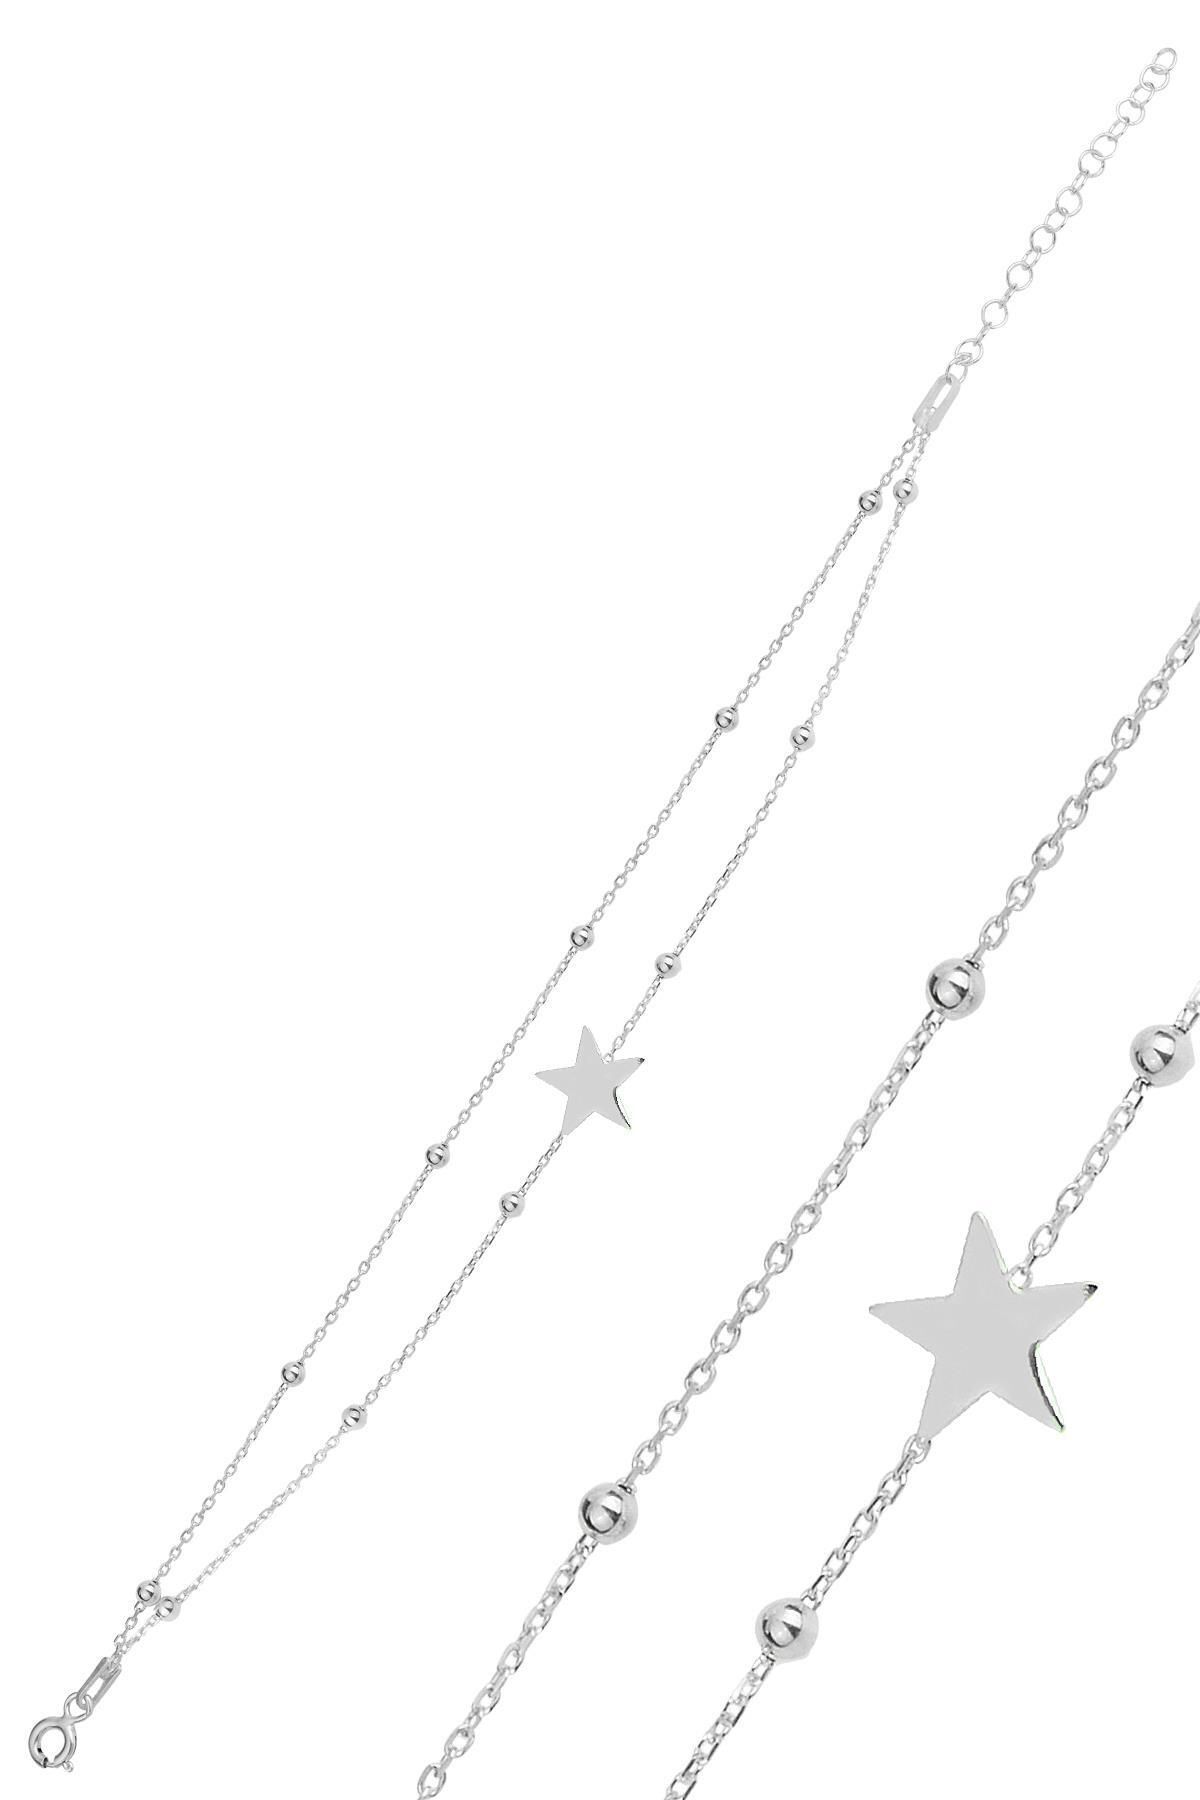 Söğütlü Silver Gümüş rodaj top top çift zincirli yıldız bileklik SGTL12277RODAJ